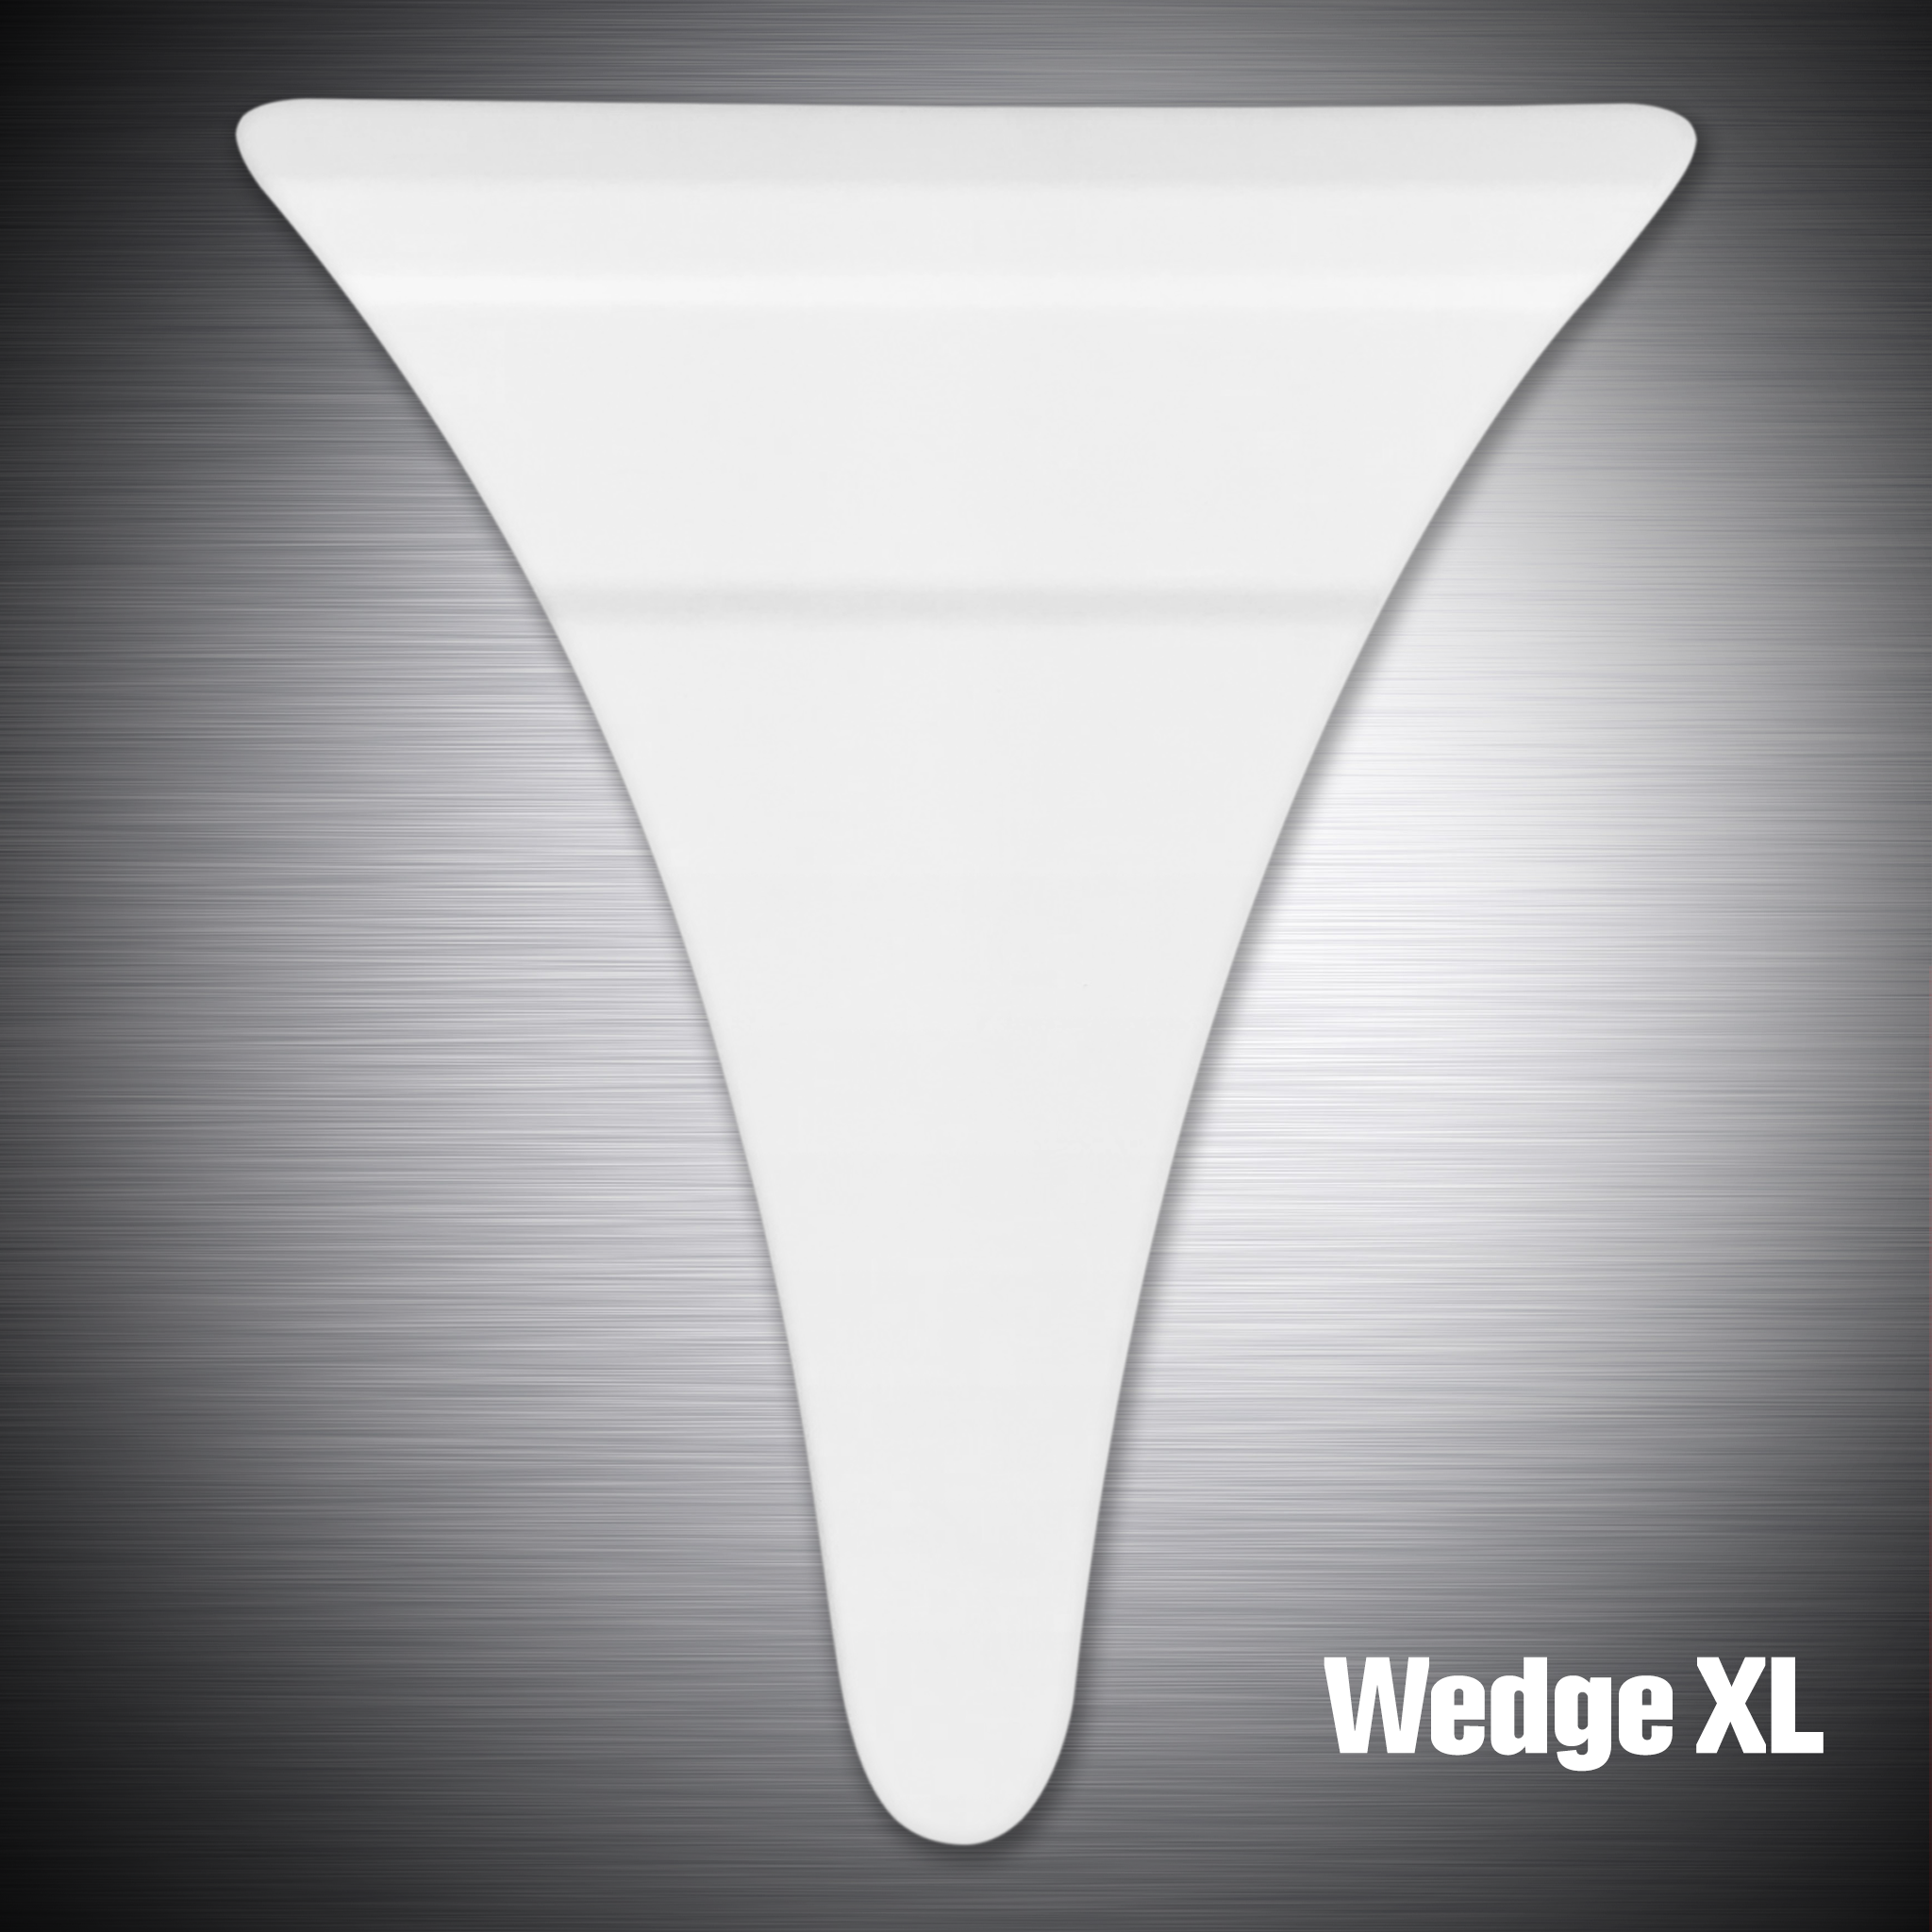 Wedge XL